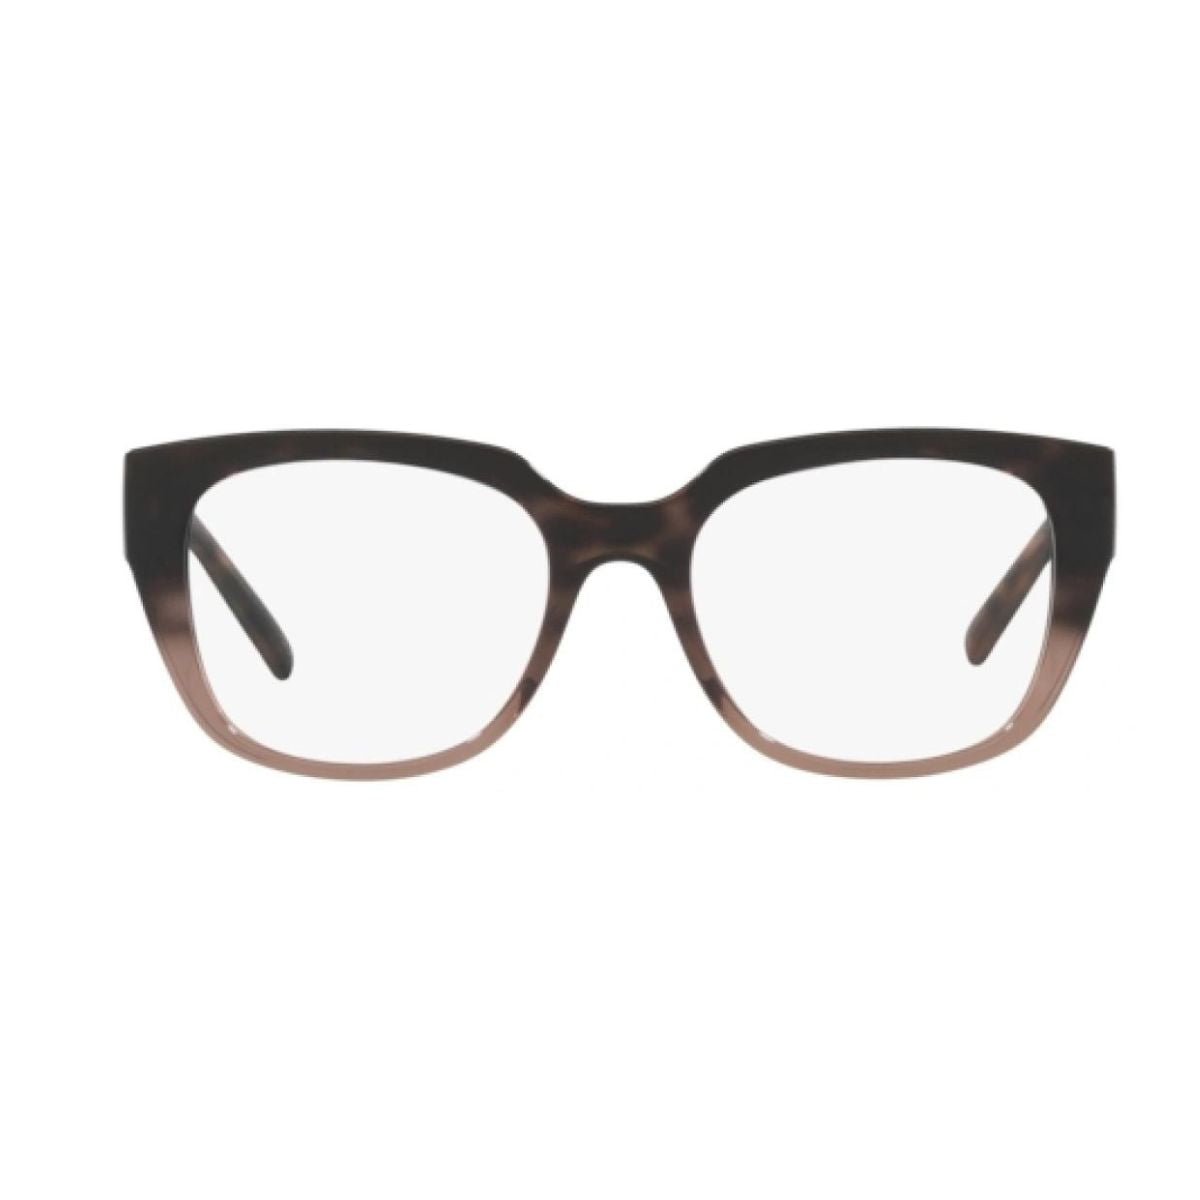 "Buy  Dolce & Gabbana 5087 3386 Square Eye Glasses Frame For Women's At Optorium"